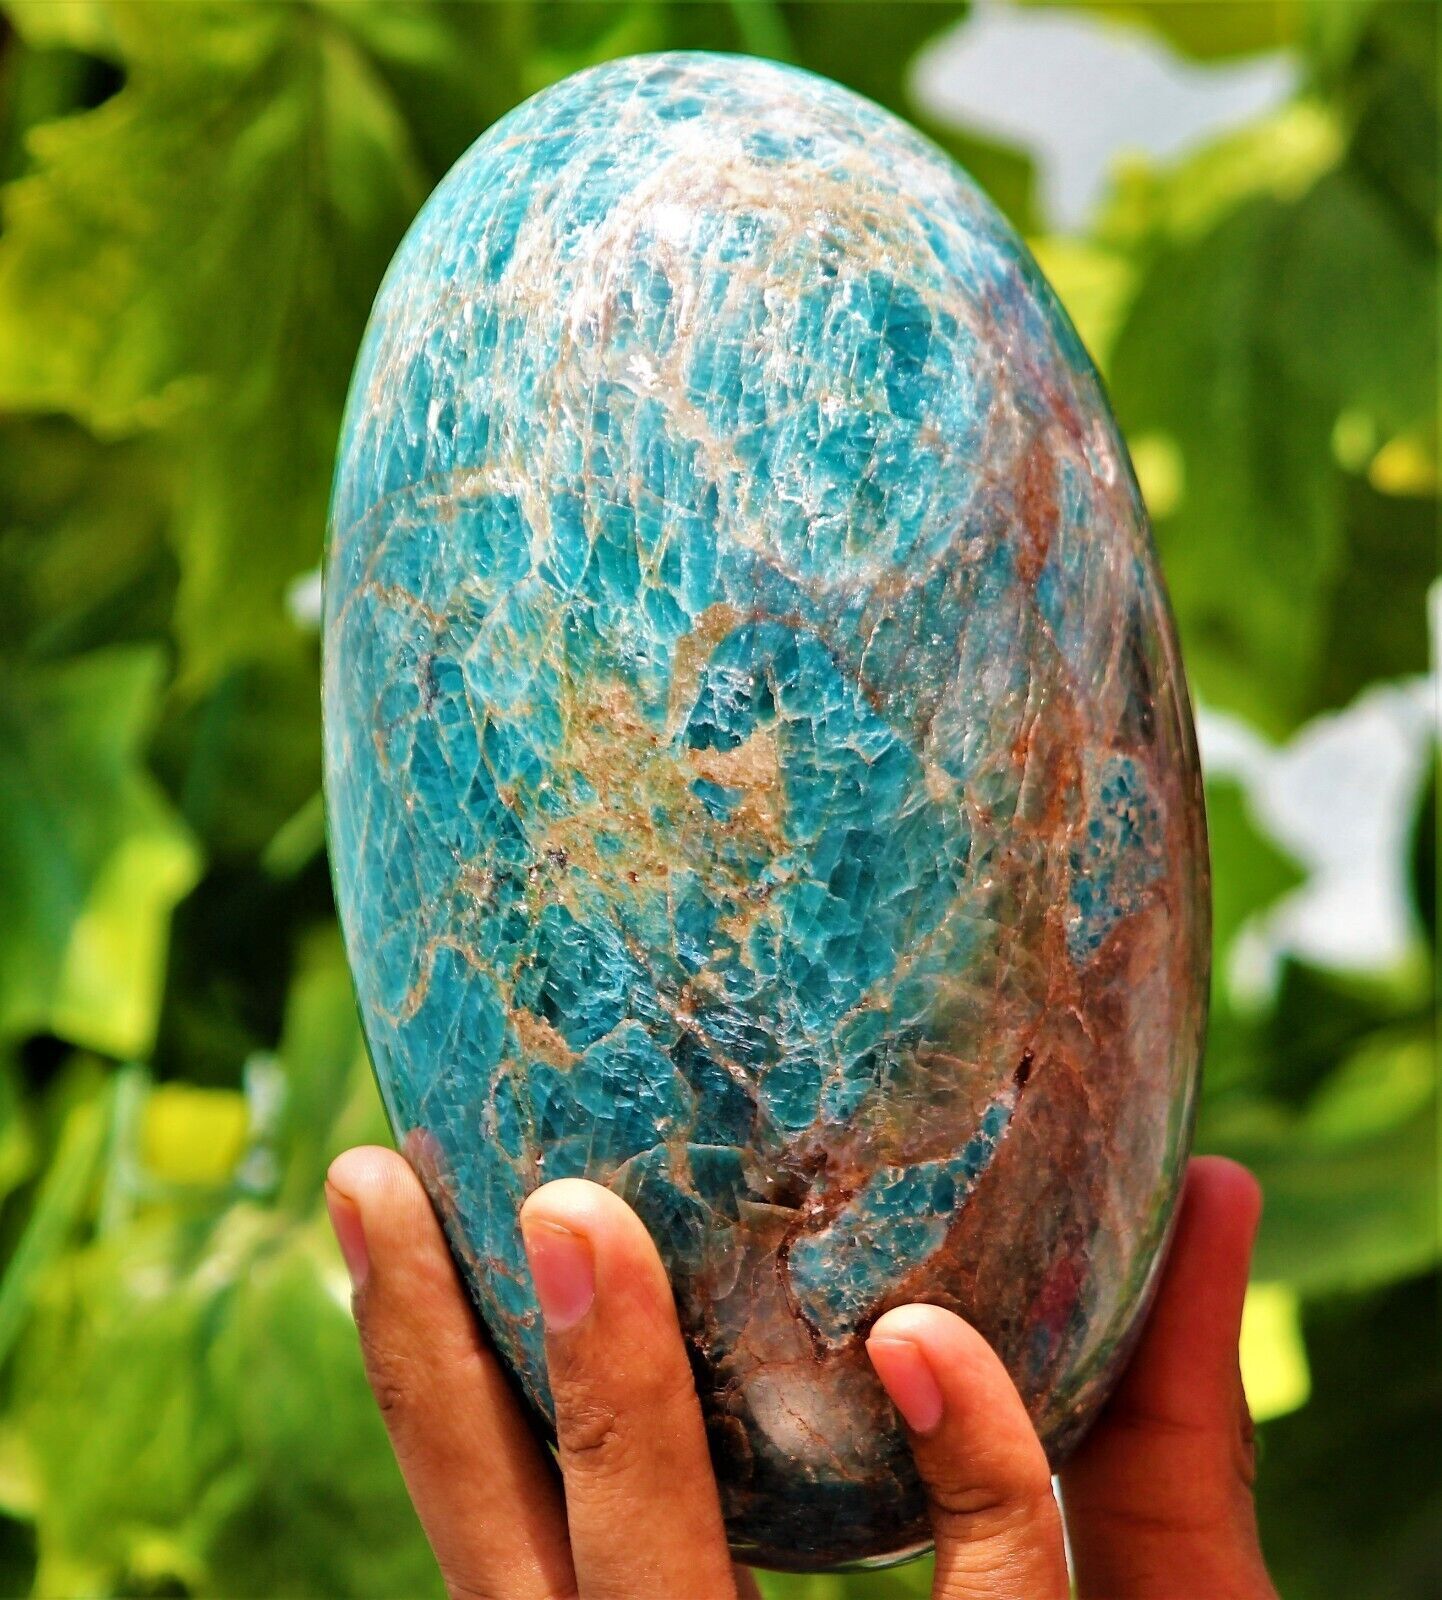 170MM Large Blue Apatite Crystal Gemstone Healing Energy Stone Lingam Specimen